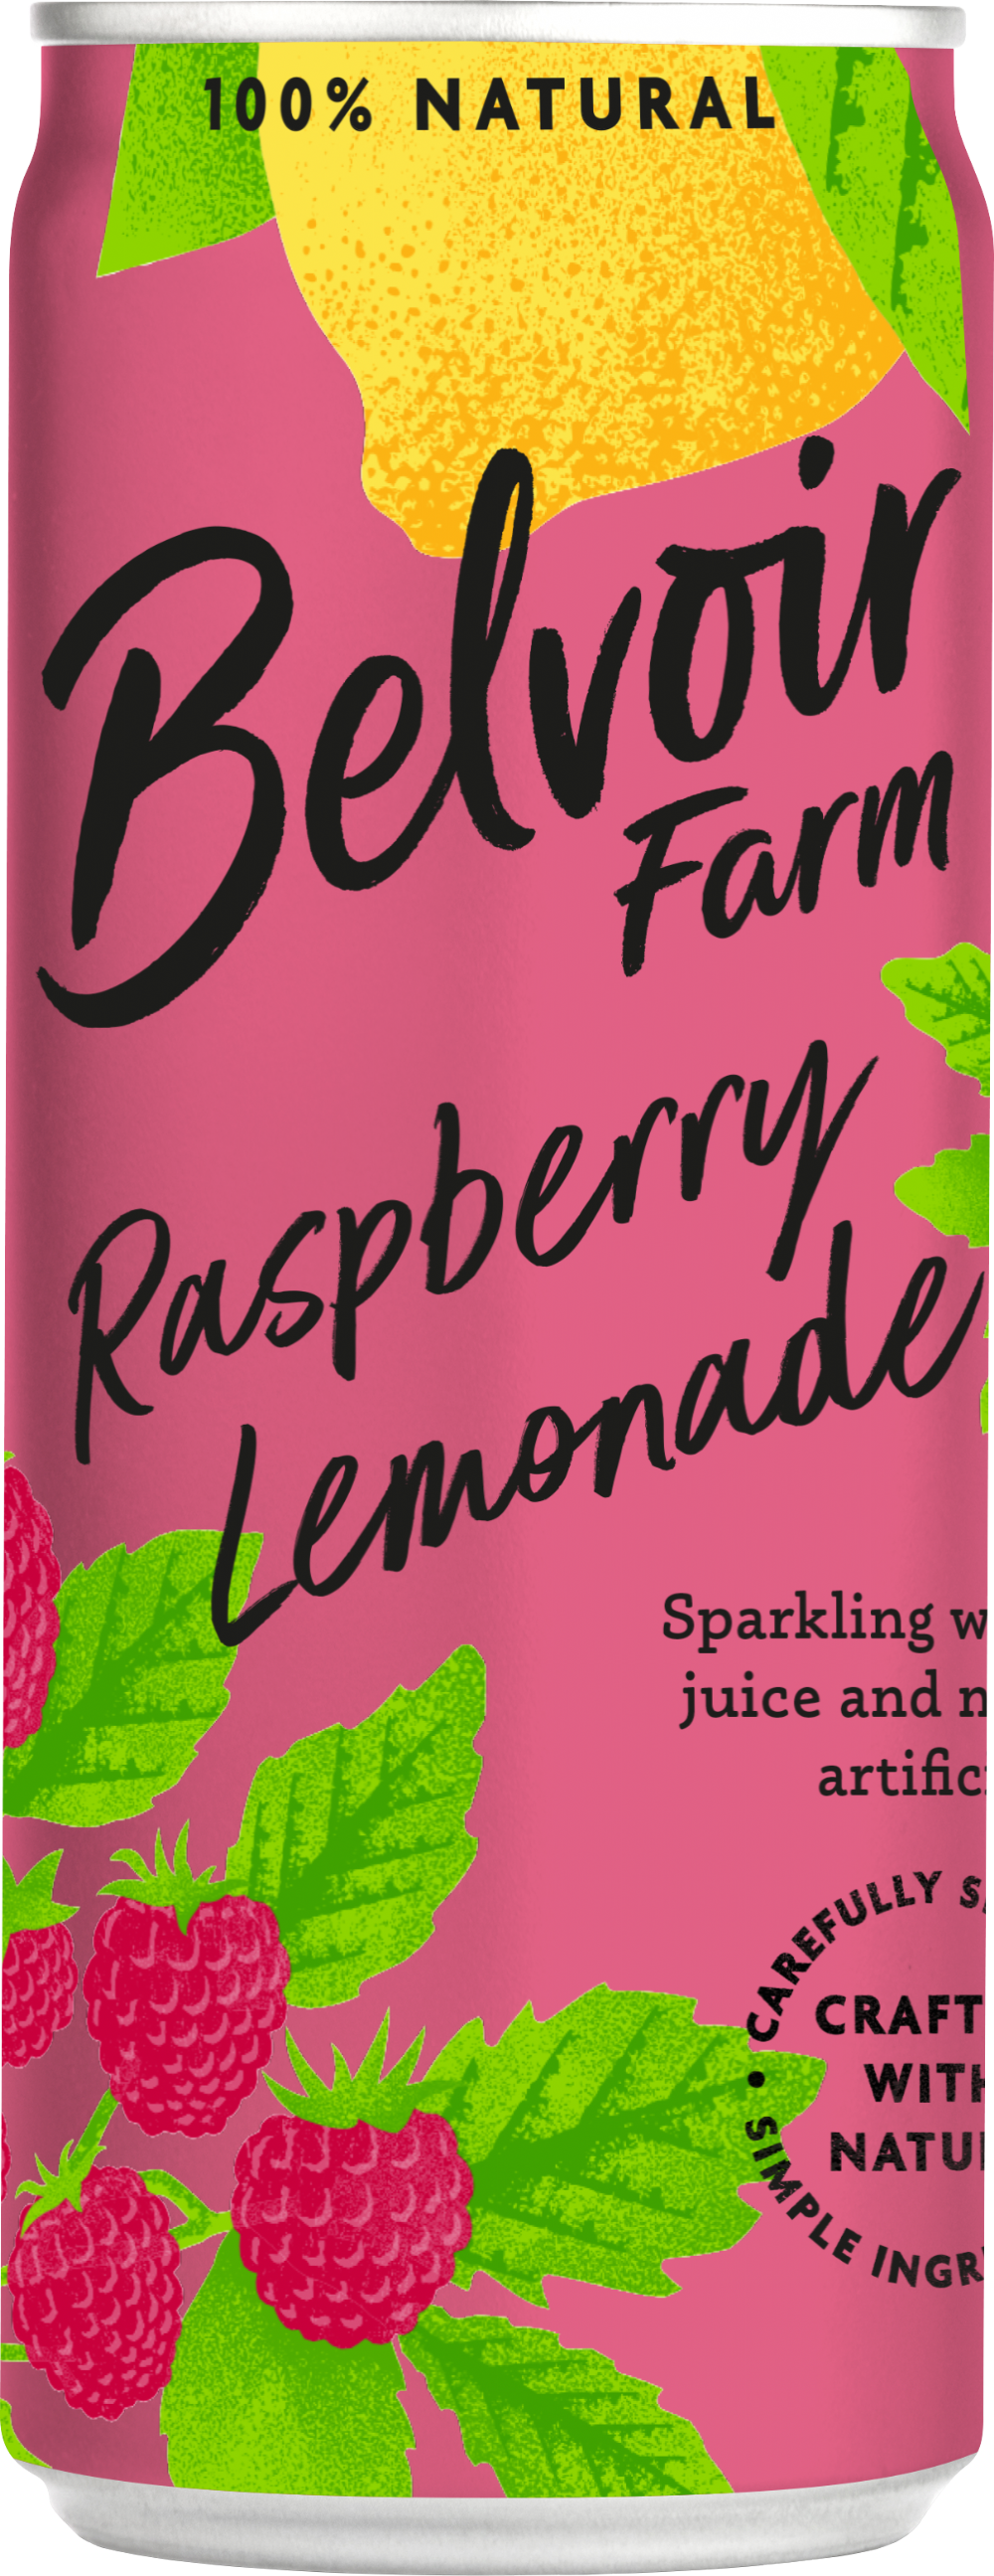 BELVOIR Raspberry Lemonade - Can 25cl